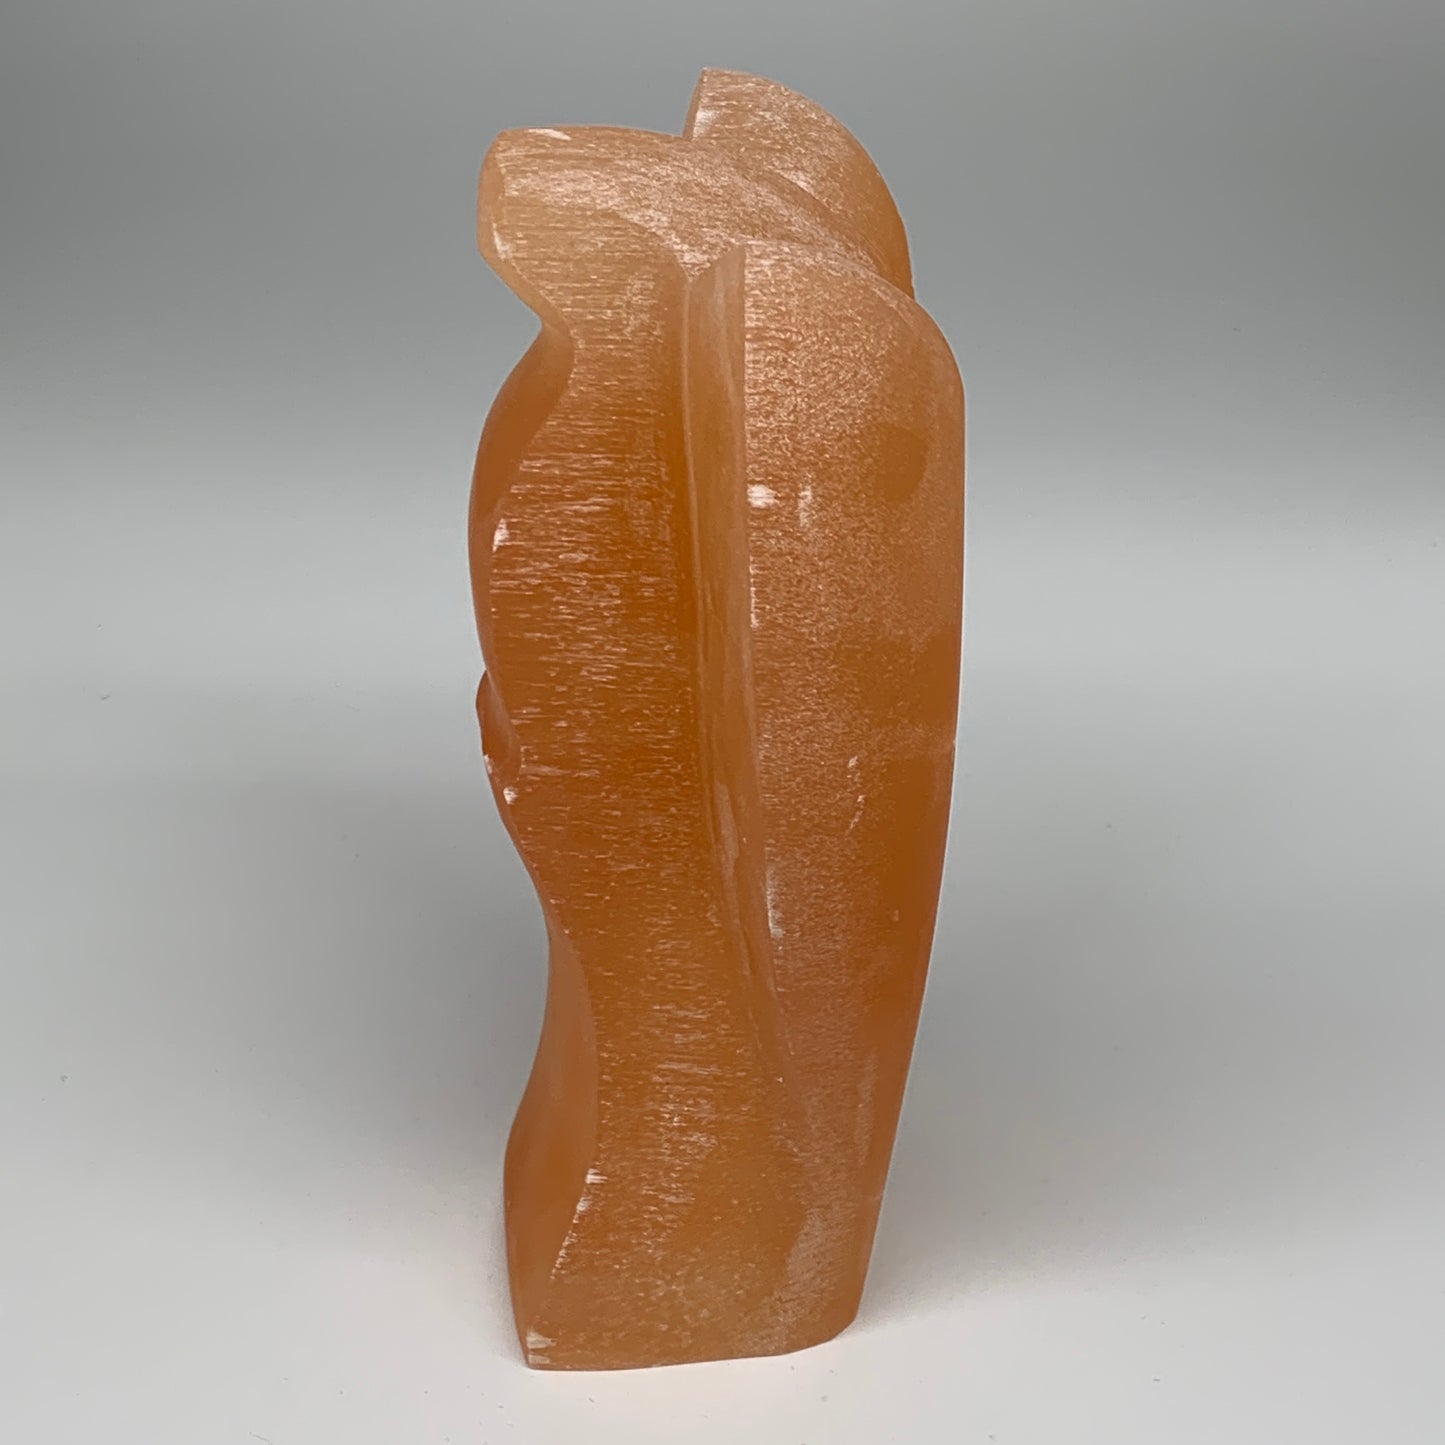 1858g, 8.25"x4.9"x2.8" Orange Selenite (Satin Spar) Angel Lamps @Morocco,B9448